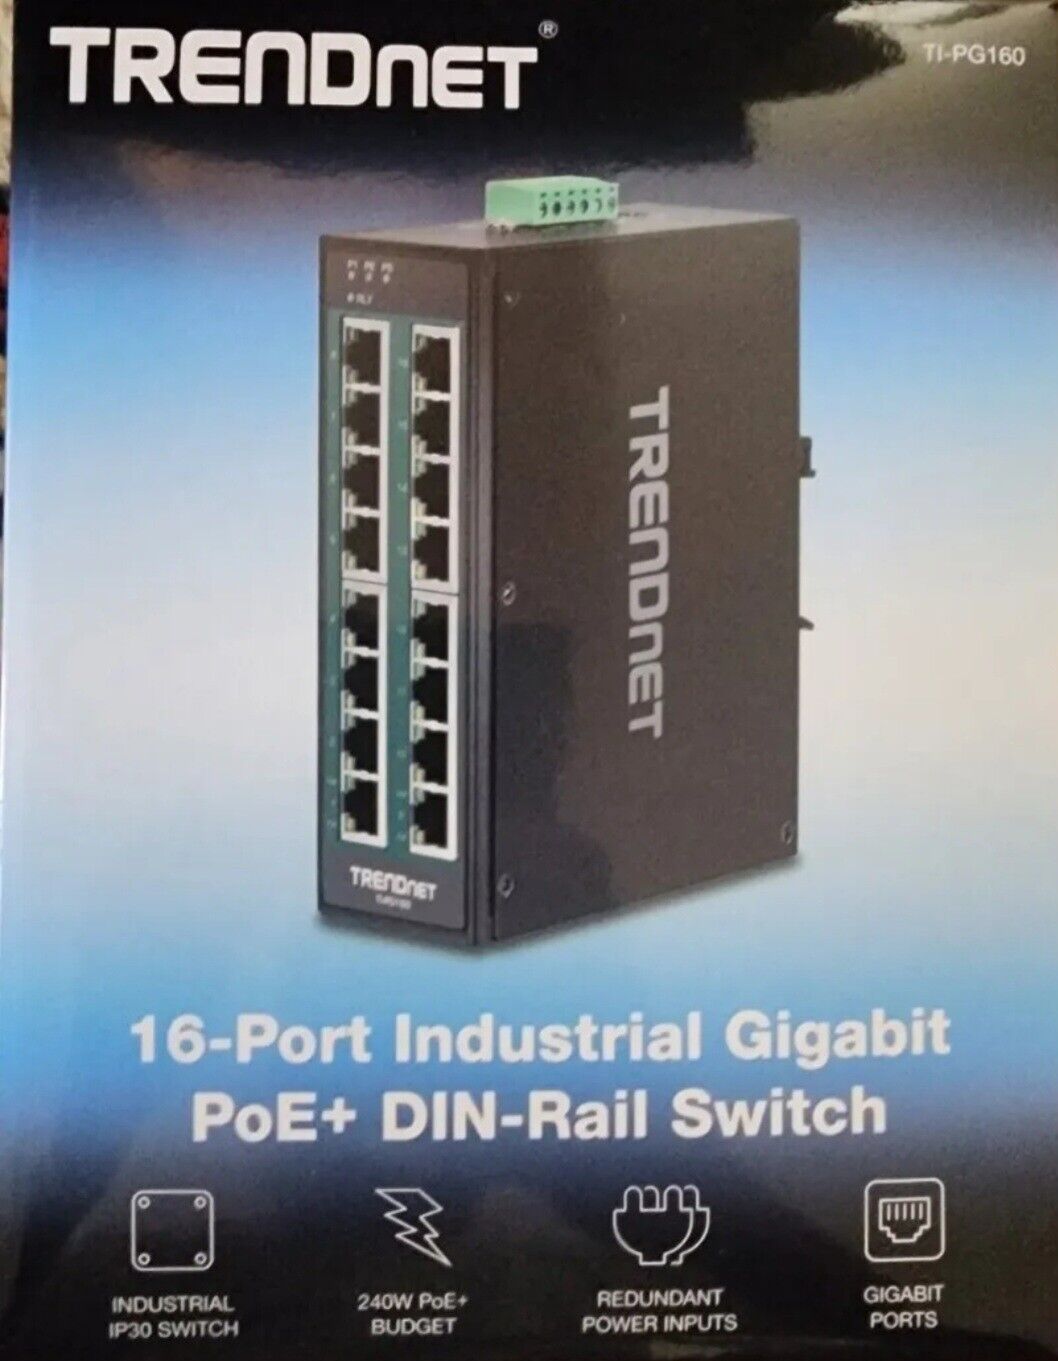 TRENDnet  TI-PG160, 16-Port Hardened Industrial Gigabit PoE+ DIN-Rail Network